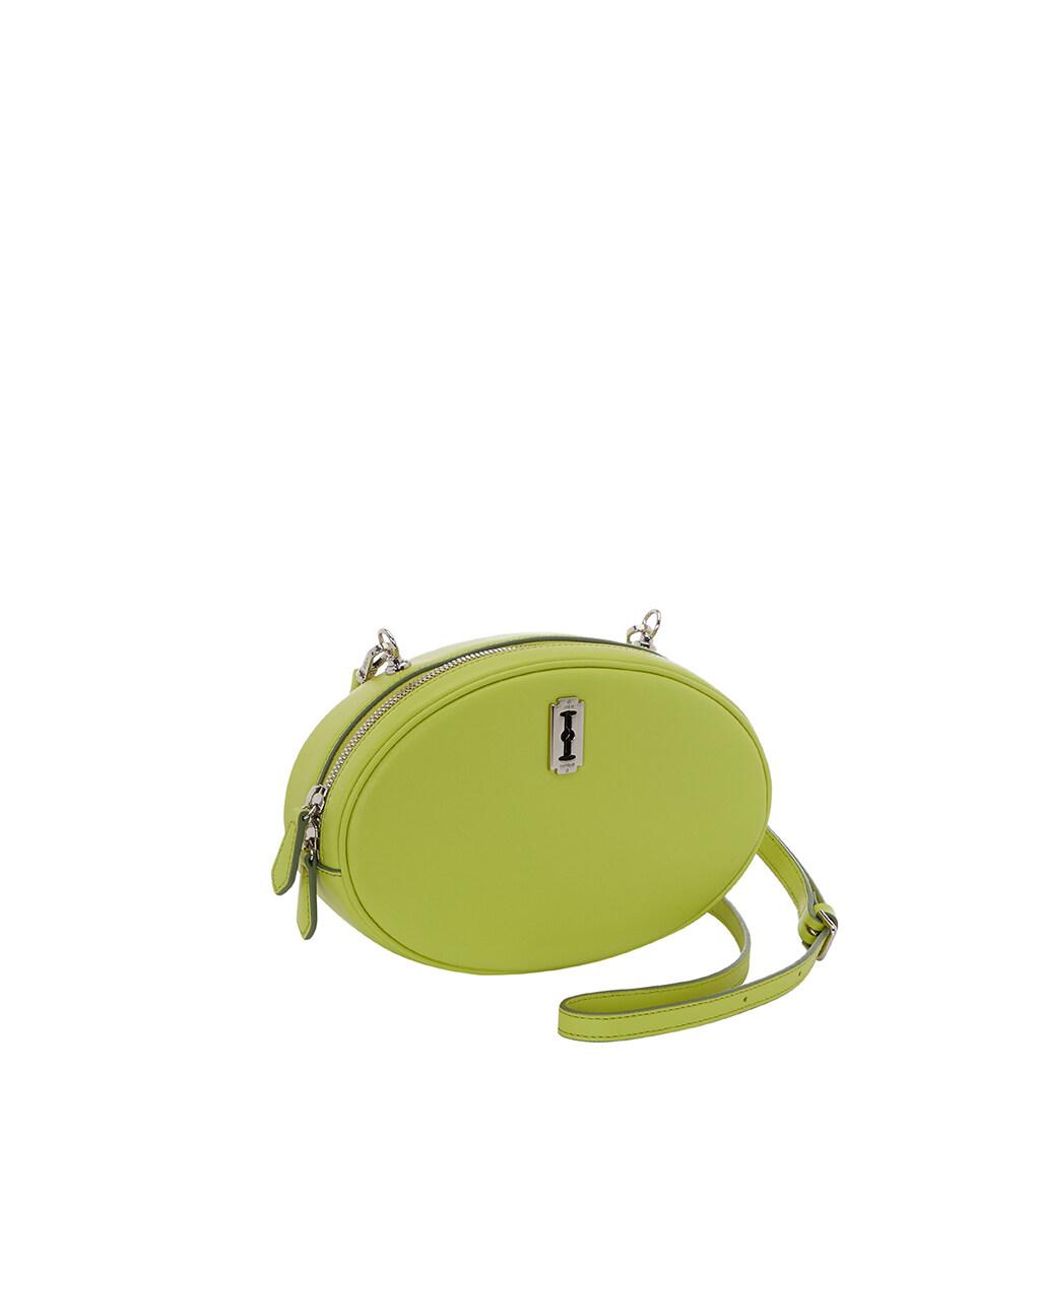 VUNQUE Mercury Round Shoulder Bag in Green | Lyst